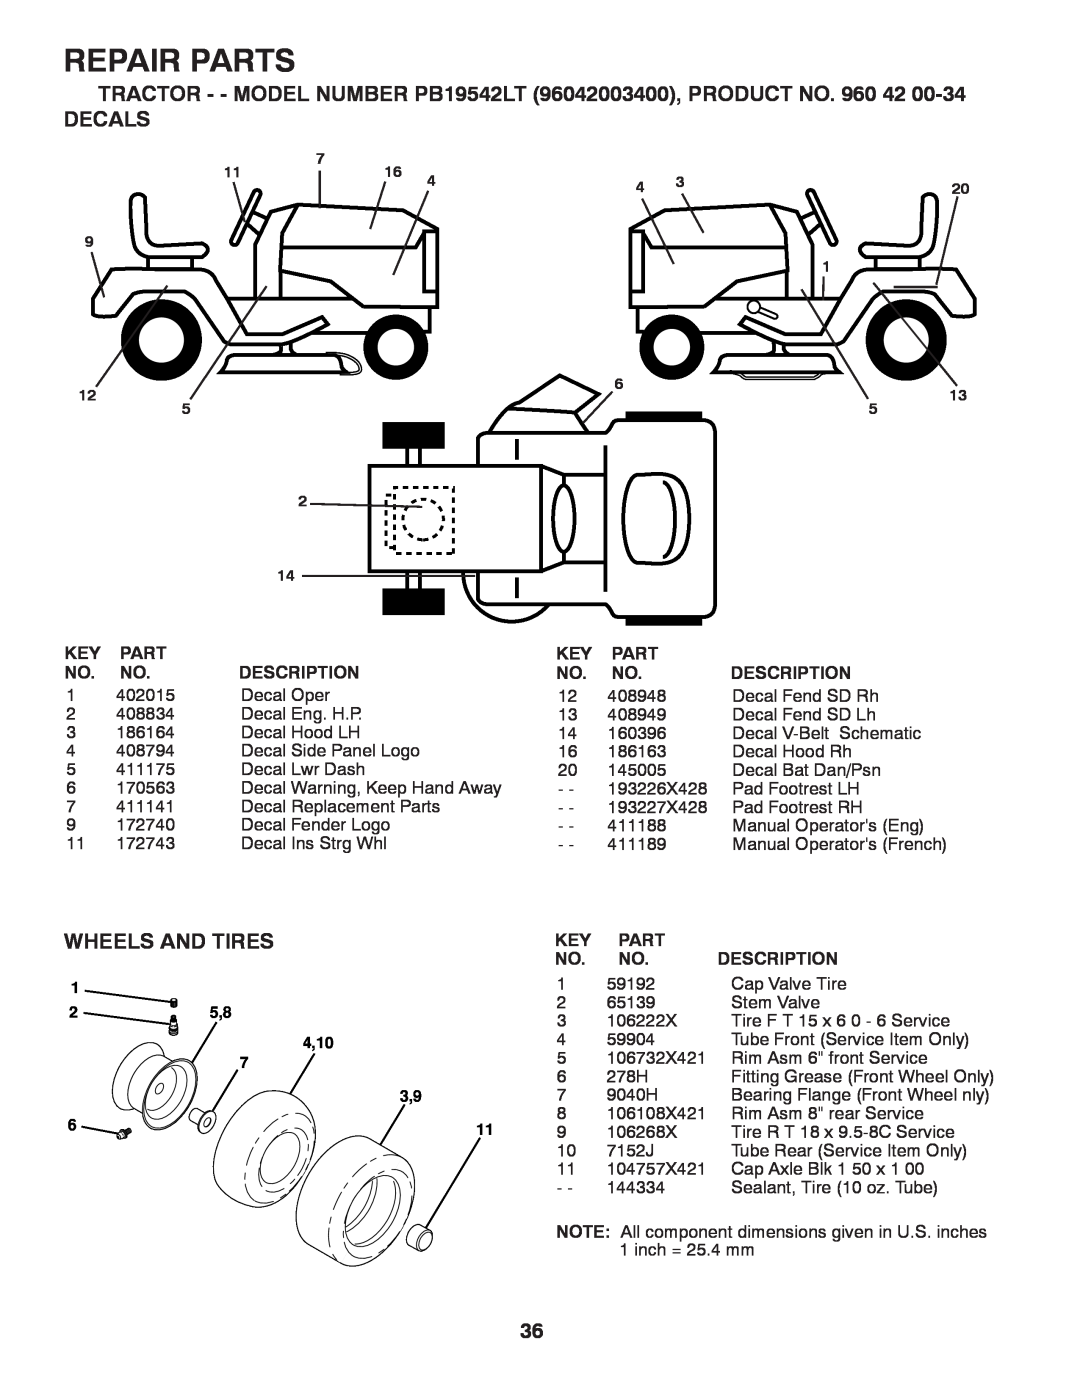 Poulan PB19542LT manual Decals, Wheels And Tires, Repair Parts, Description 